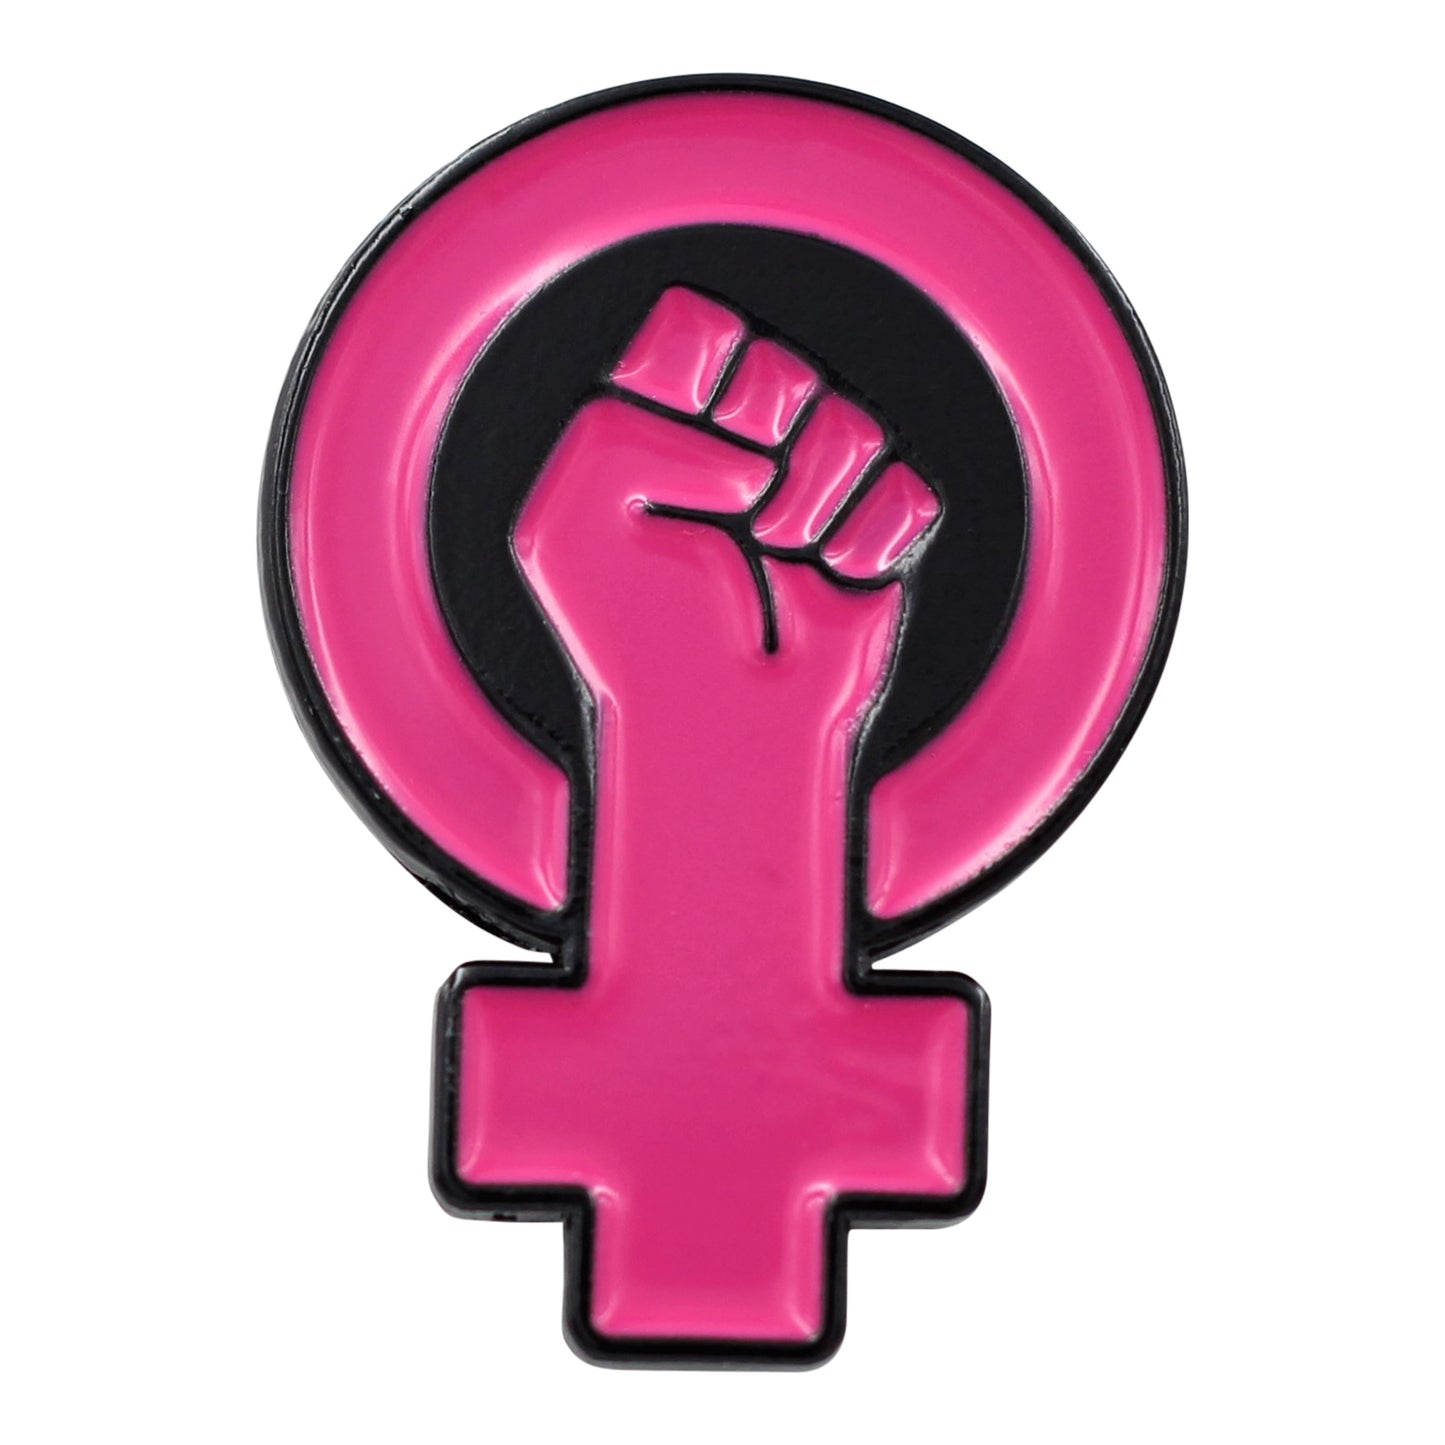 Women's Power - Raised Feminist Fist Protest Enamel Pin